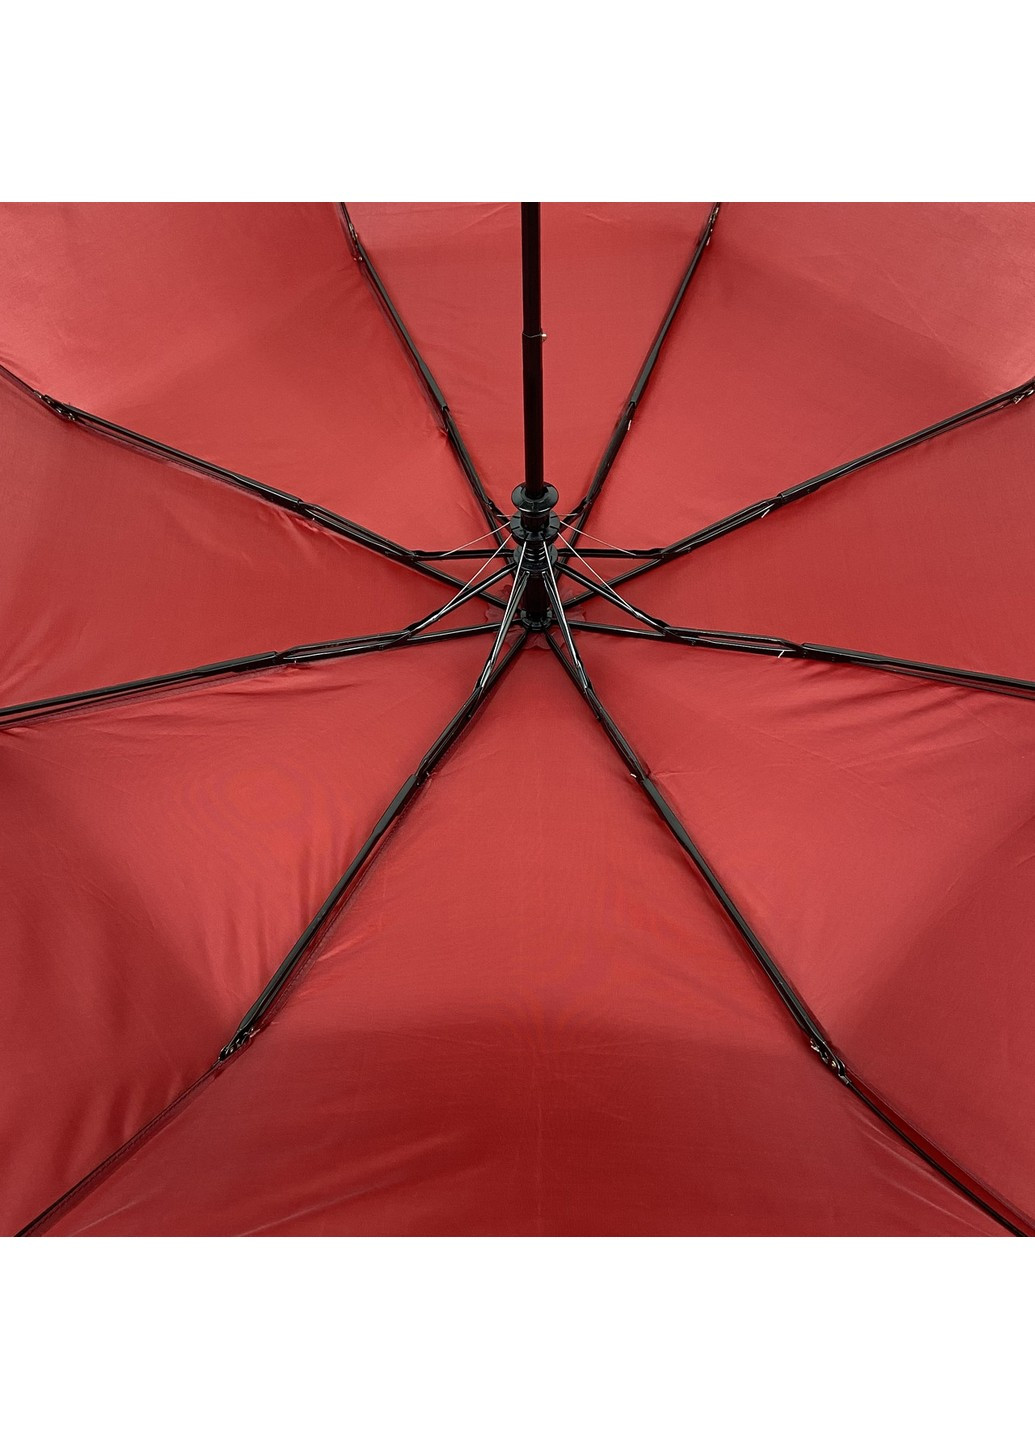 Женский зонт полуавтомат 98 см SL (258639163)